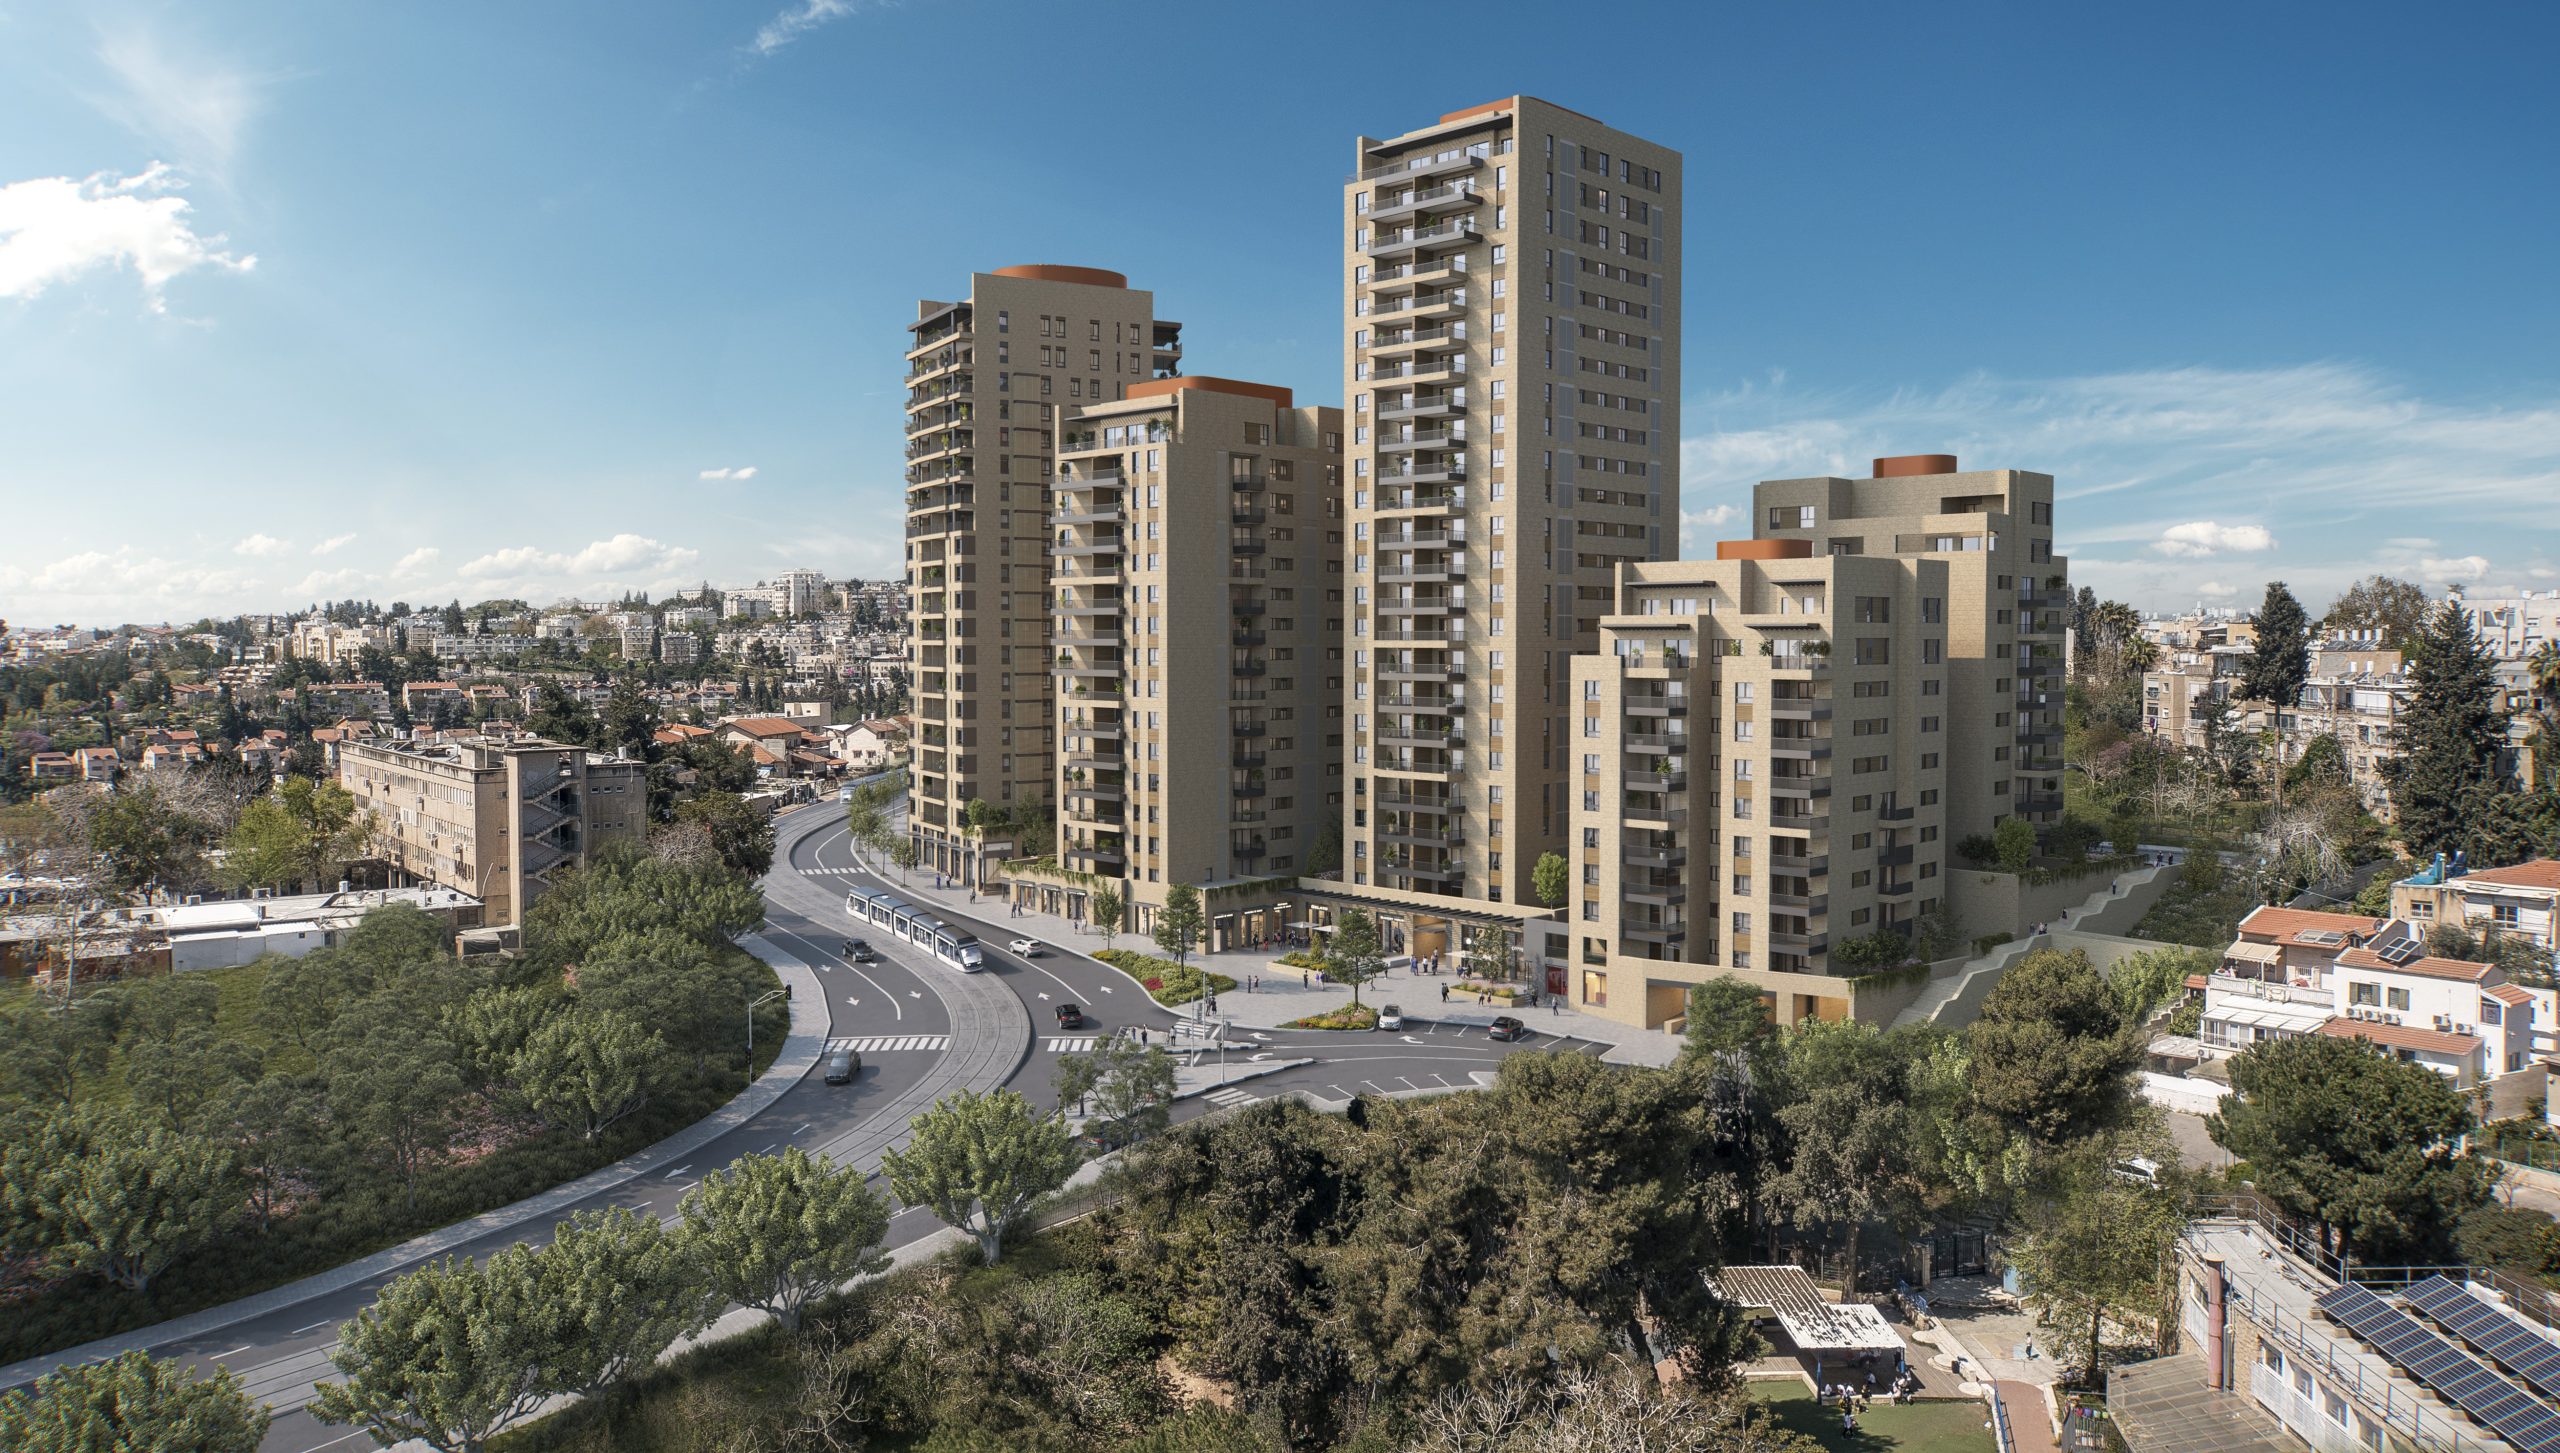 התקבל היתר בנייה למתחם השני בפרויקט 'שדרות היובל' – פרויקט 'פינוי-בינוי' הראשון  בשכונת קריית היובל בירושלים